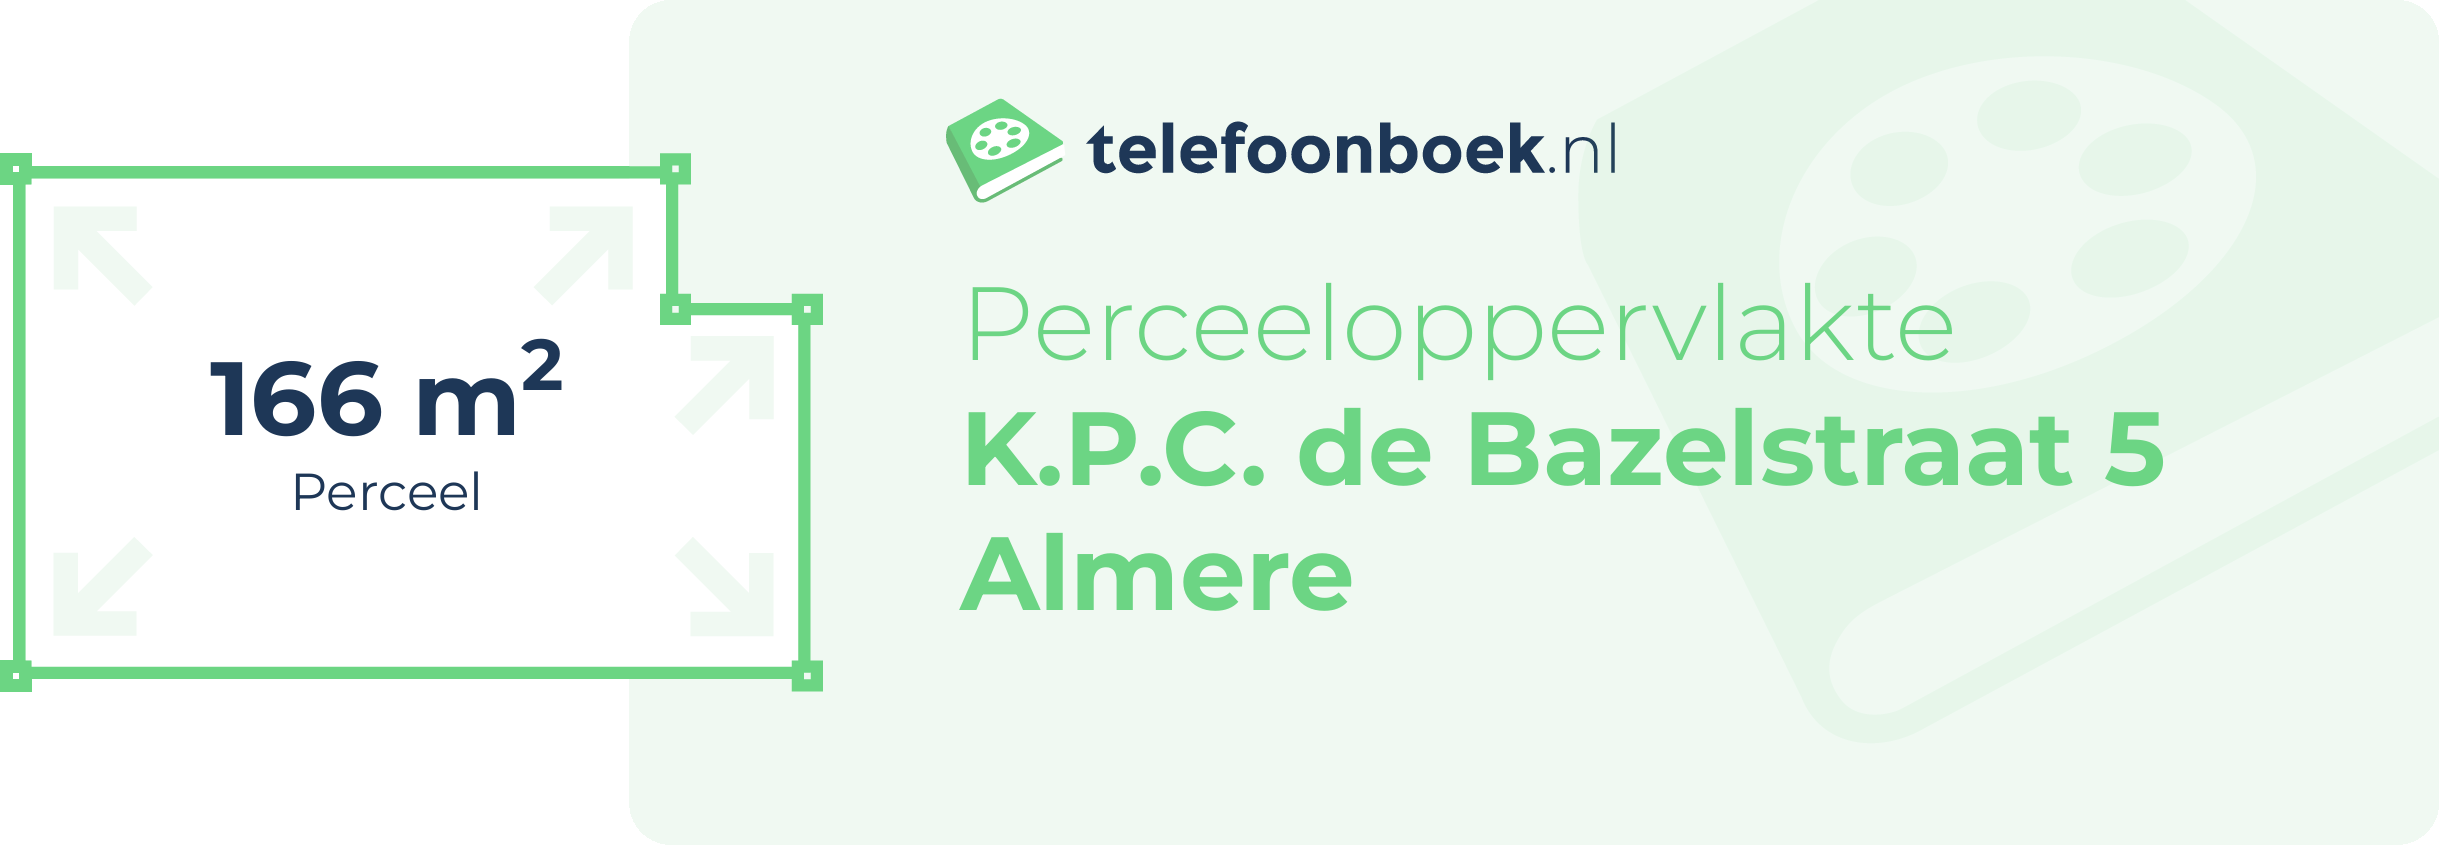 Perceeloppervlakte K.P.C. De Bazelstraat 5 Almere